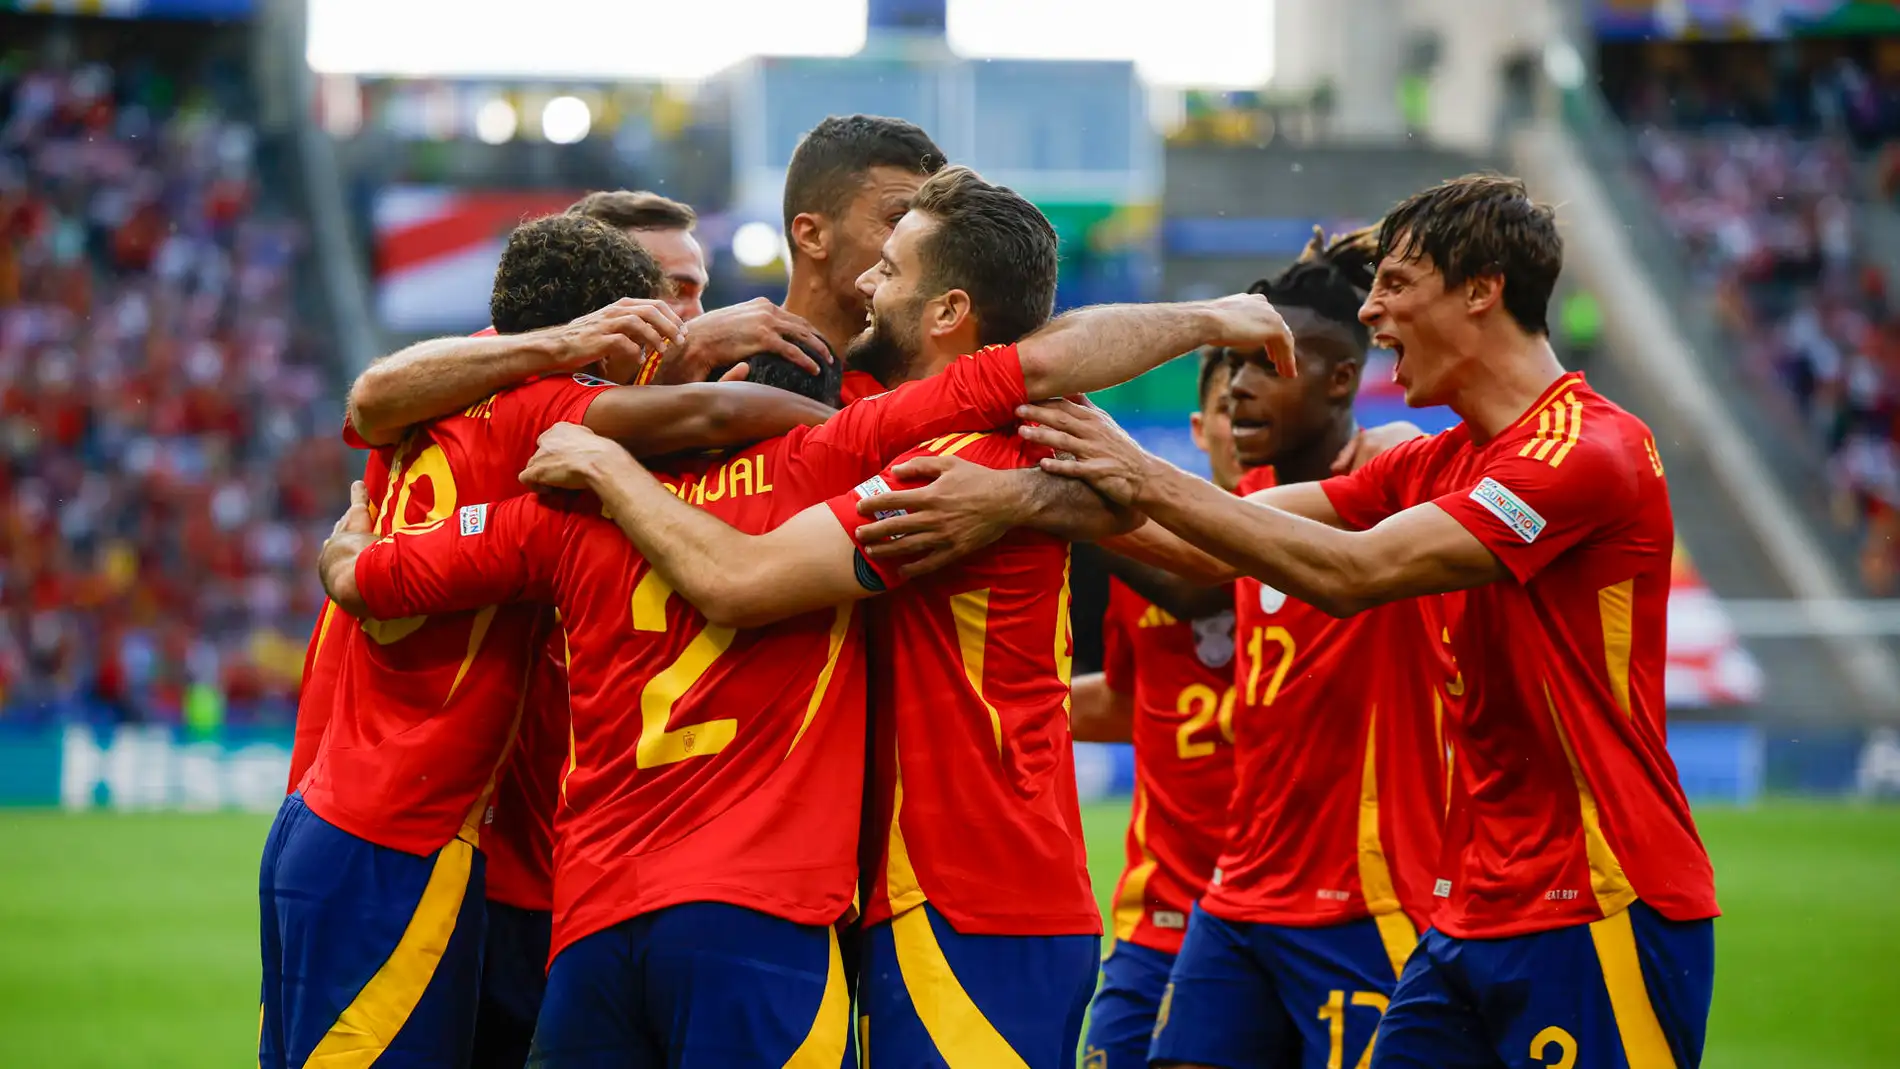  El defensa de la selección española Dani Carvajal celebra con sus compañeros tras marcar el 3-0 